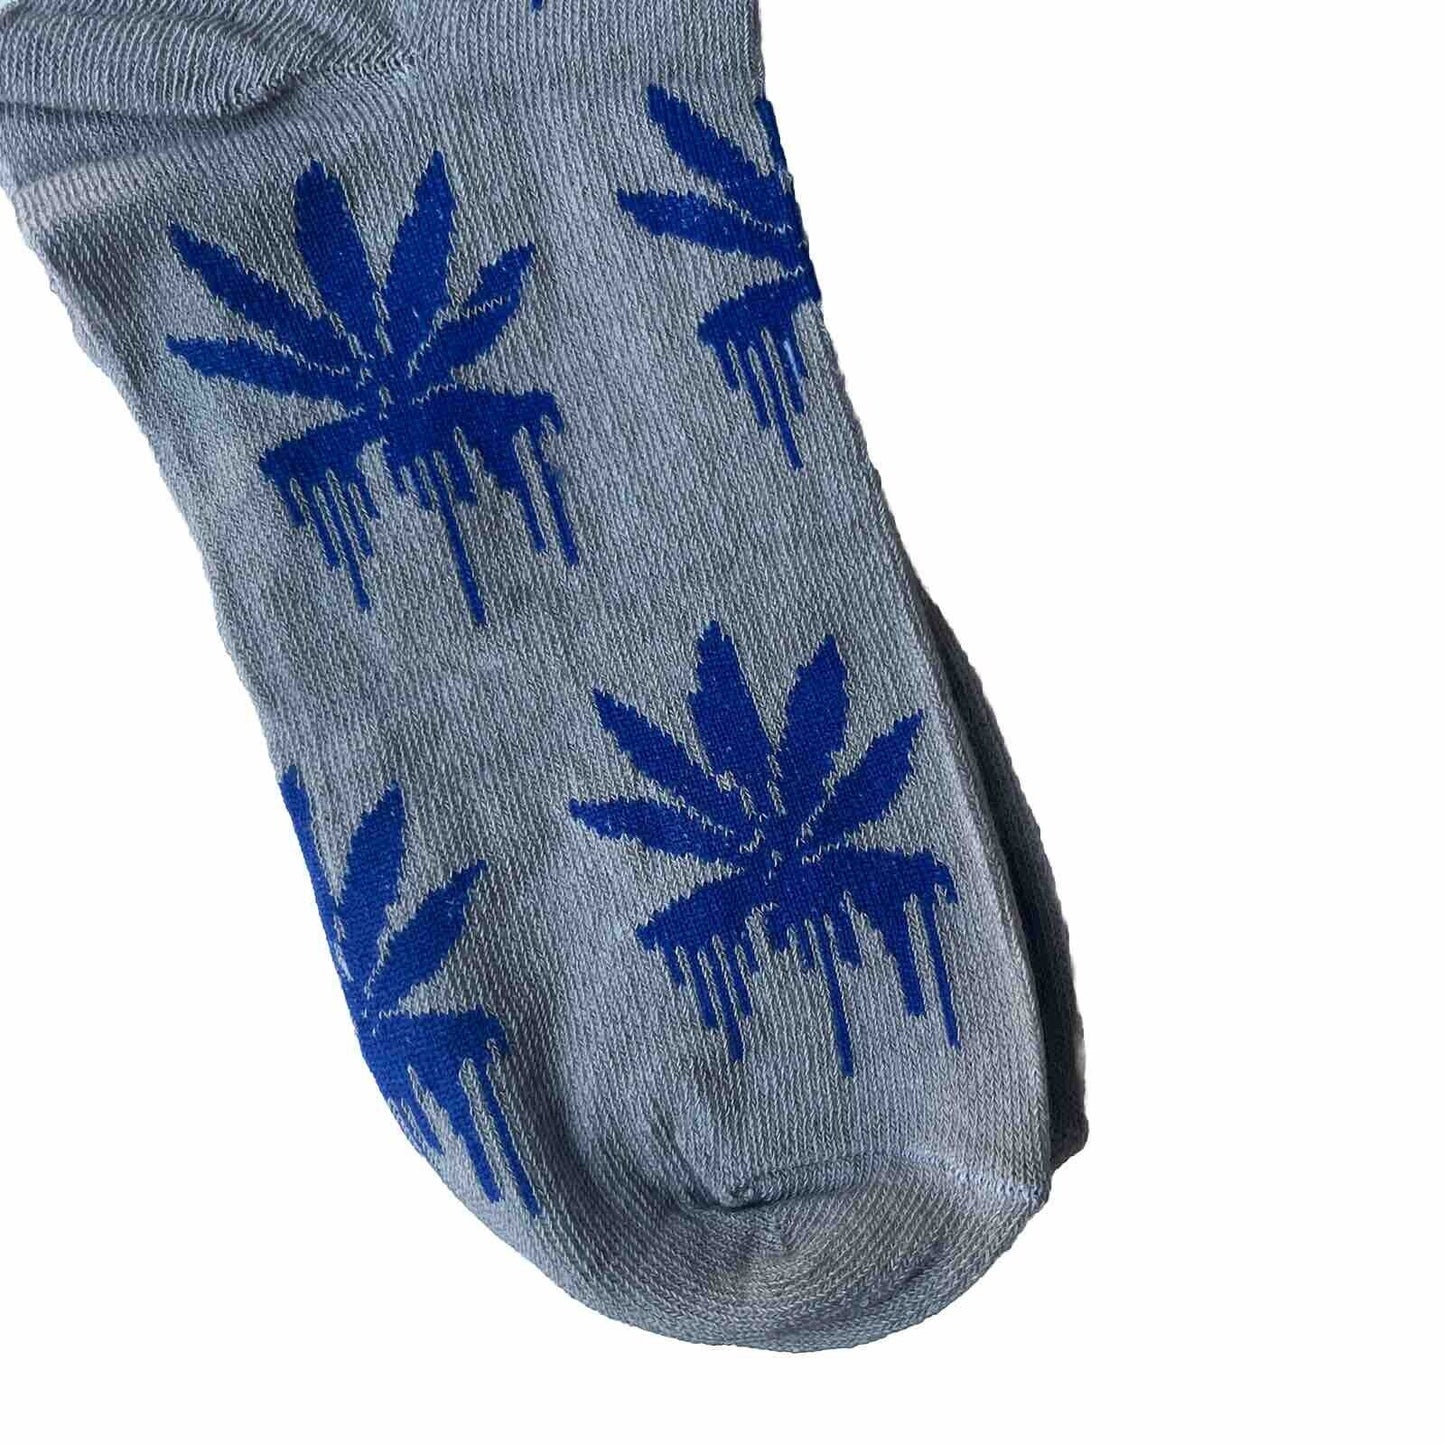 Novelty Socks Weed Blue Melting Leaf Bottom